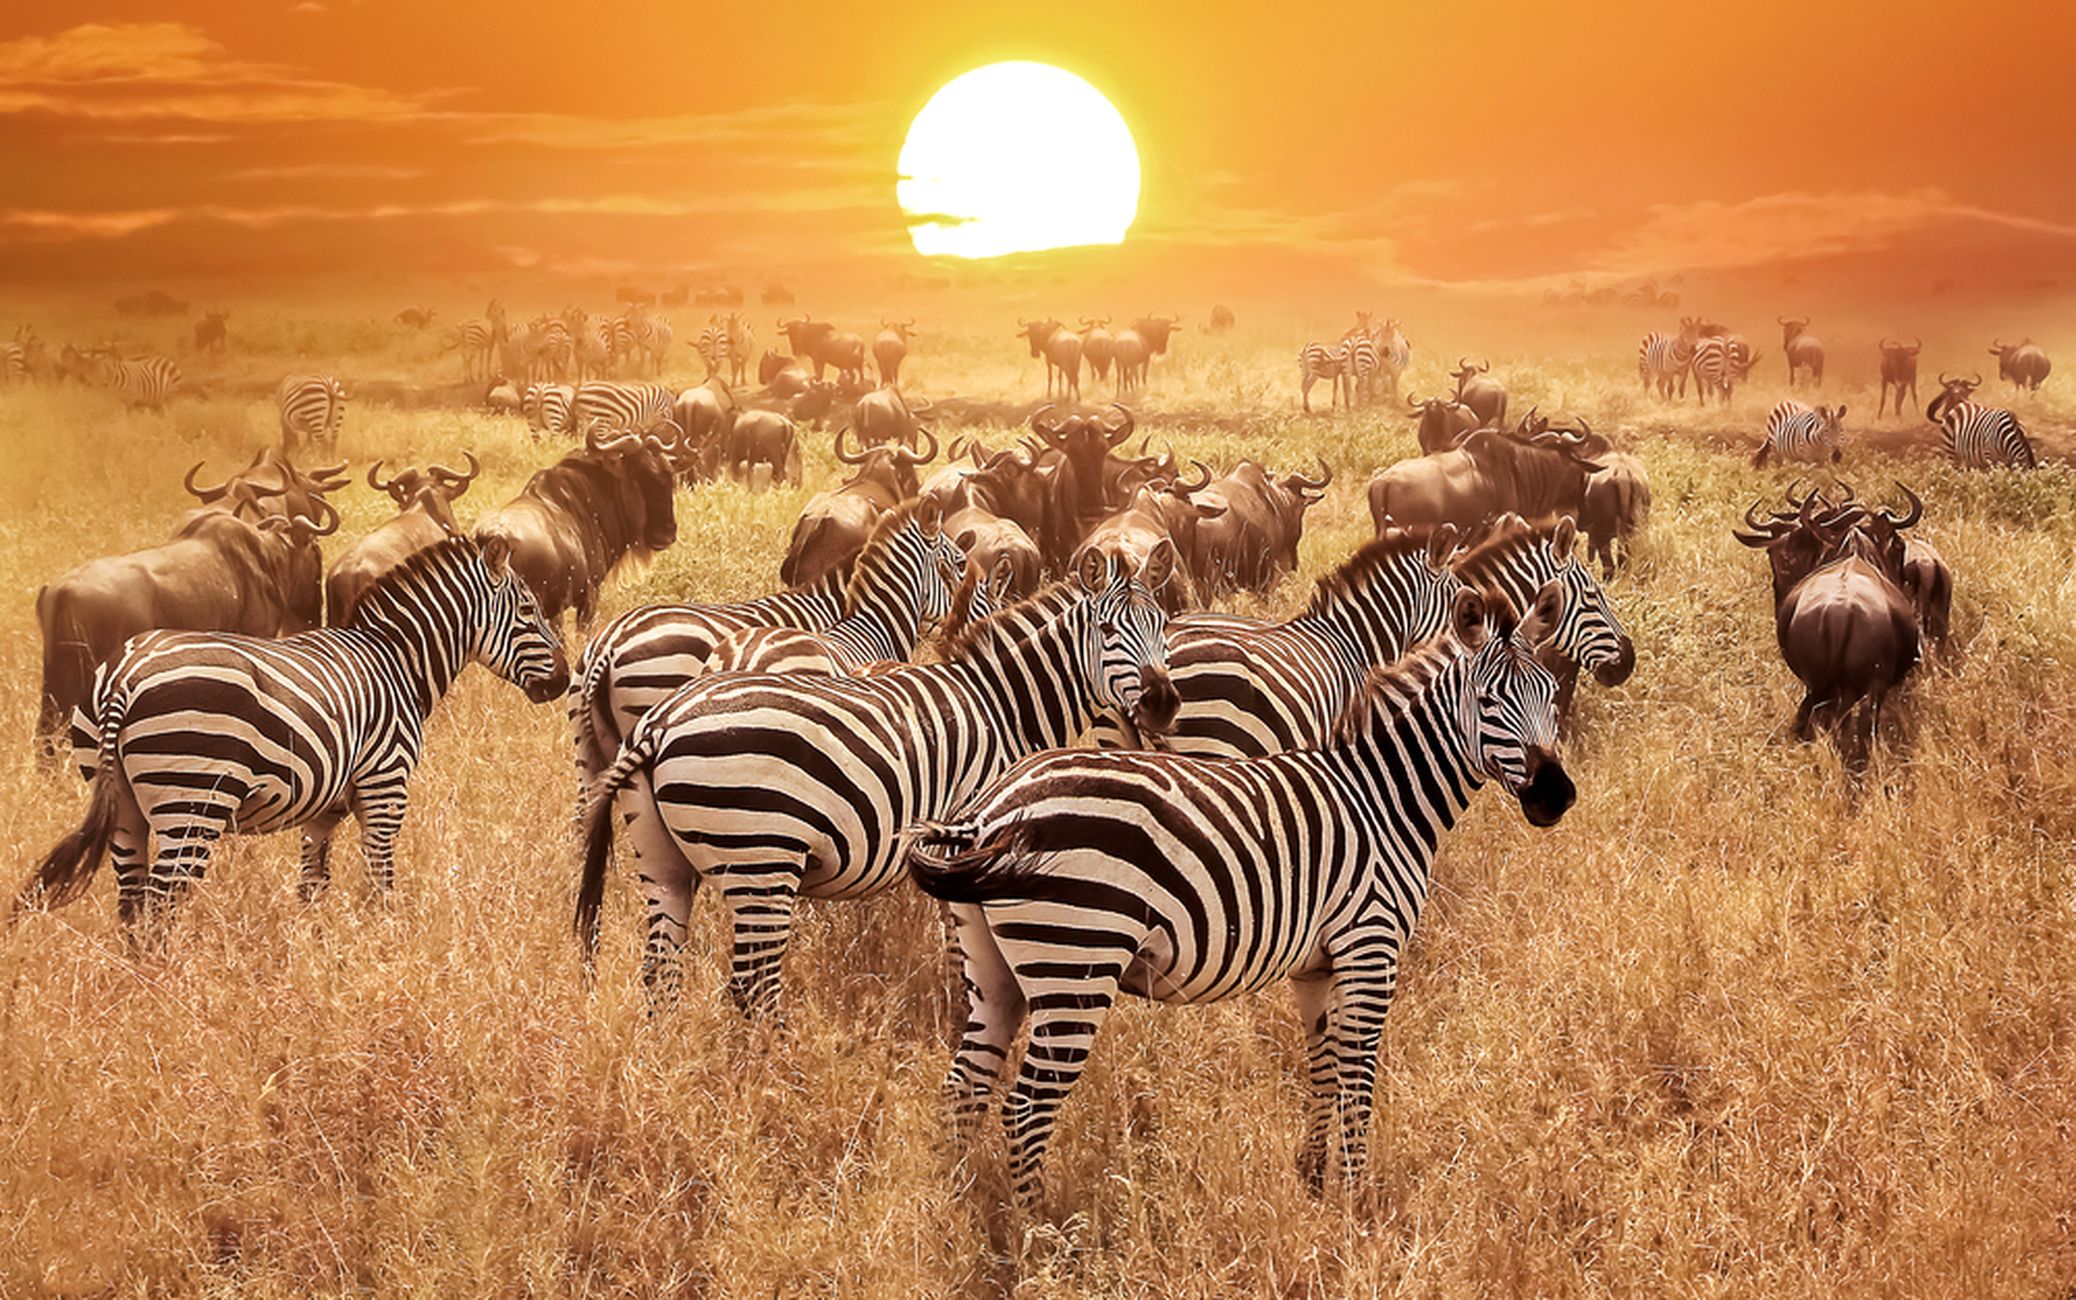 Tansaania kuulub oma rikkaliku looduse ja loomastikuga Anna-Katri lemmikute sekka